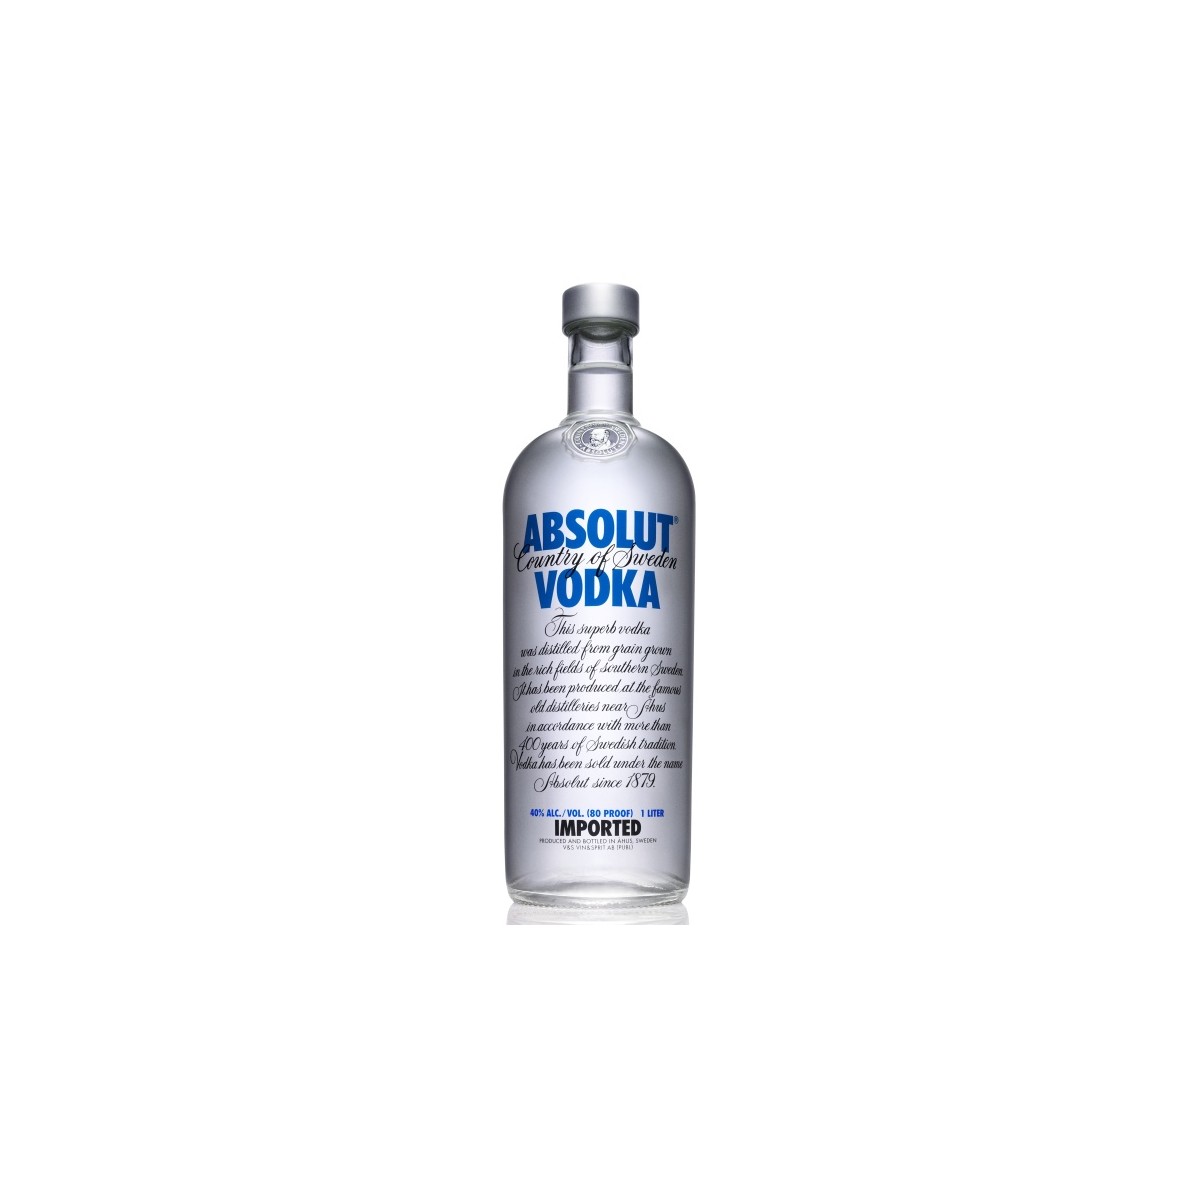 Absolut vodka 0,7l